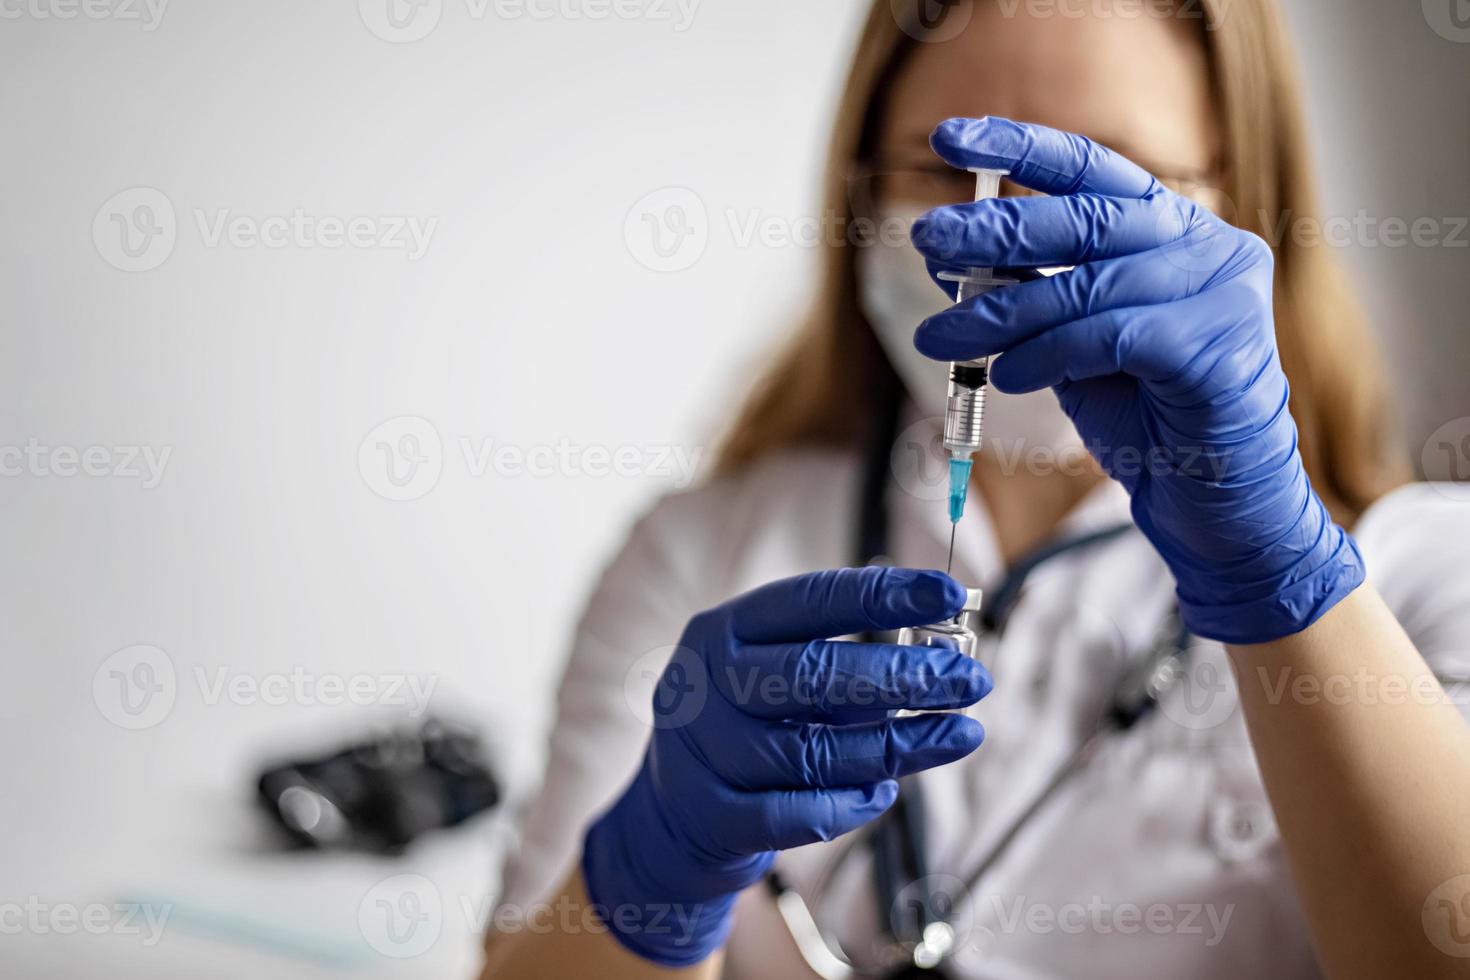 Eine Ärztin, die eine medizinische Maske trägt, zieht den Coronavirus-Impfstoff in der Klinik in eine Spritze. Das Konzept der Impfung, Immunisierung, Prävention gegen Covid-19. foto